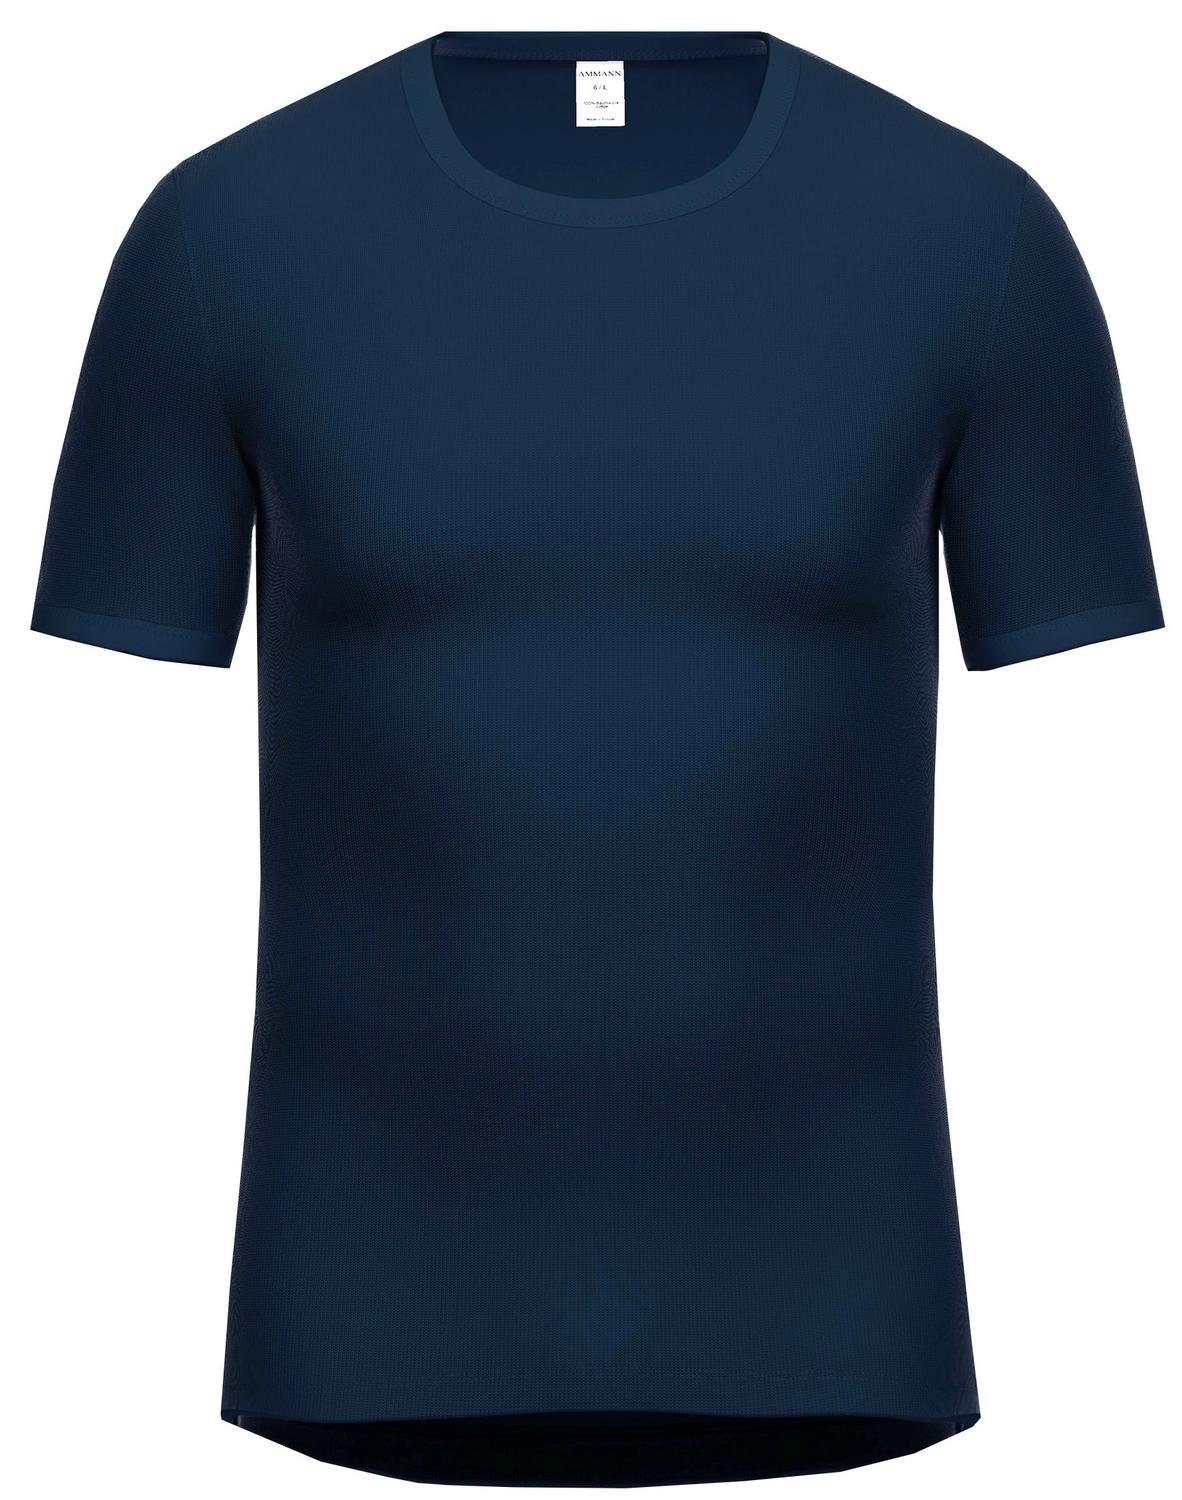 Ammann Unterhemd 300 Feinripp Shirt 1/2 Arm